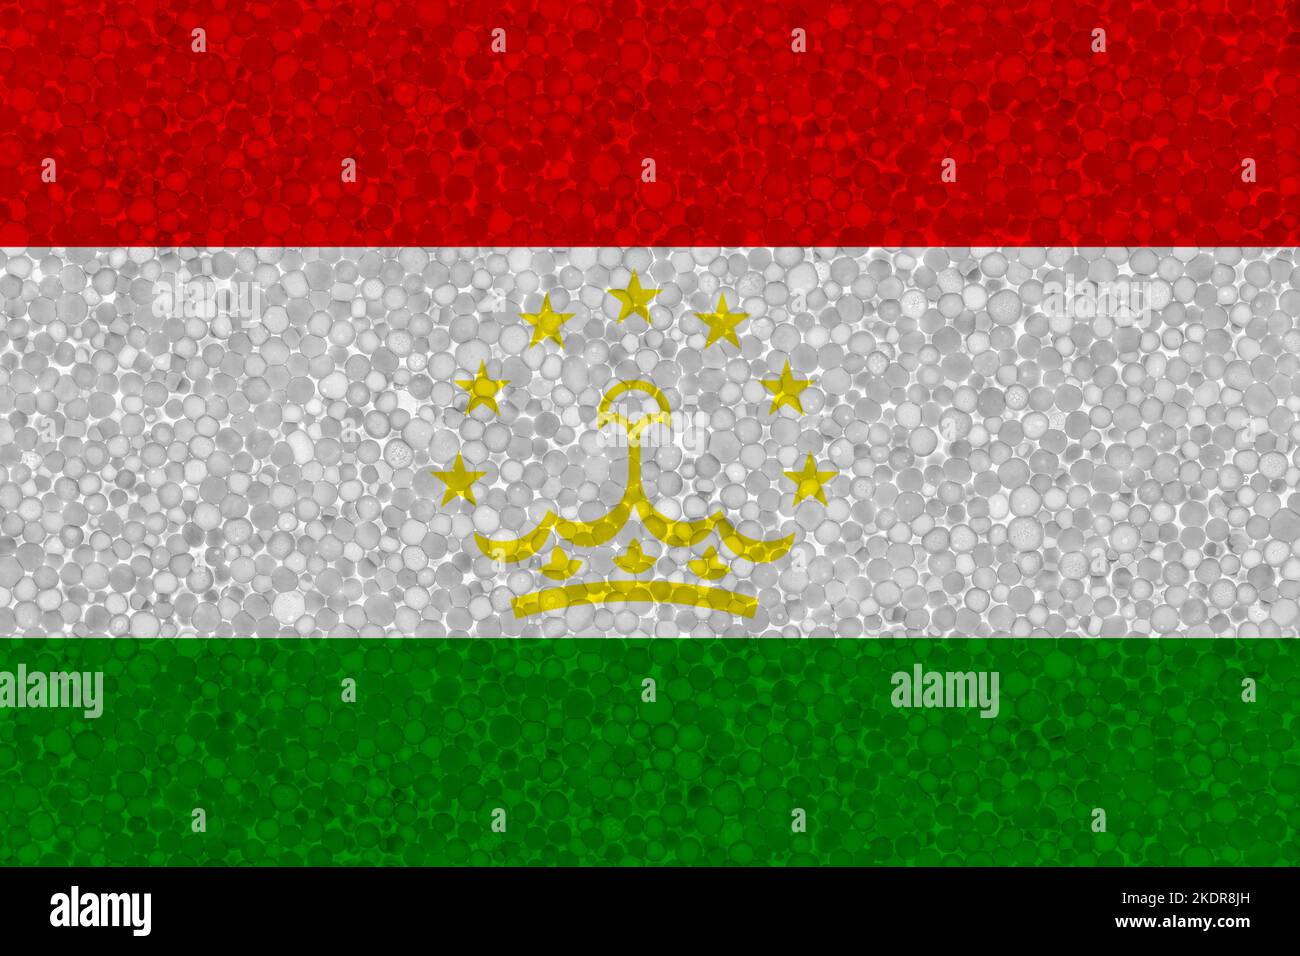 Drapeau du Tadjikistan sur la texture de la styromousse. Drapeau national peint sur la surface de la mousse plastique Banque D'Images